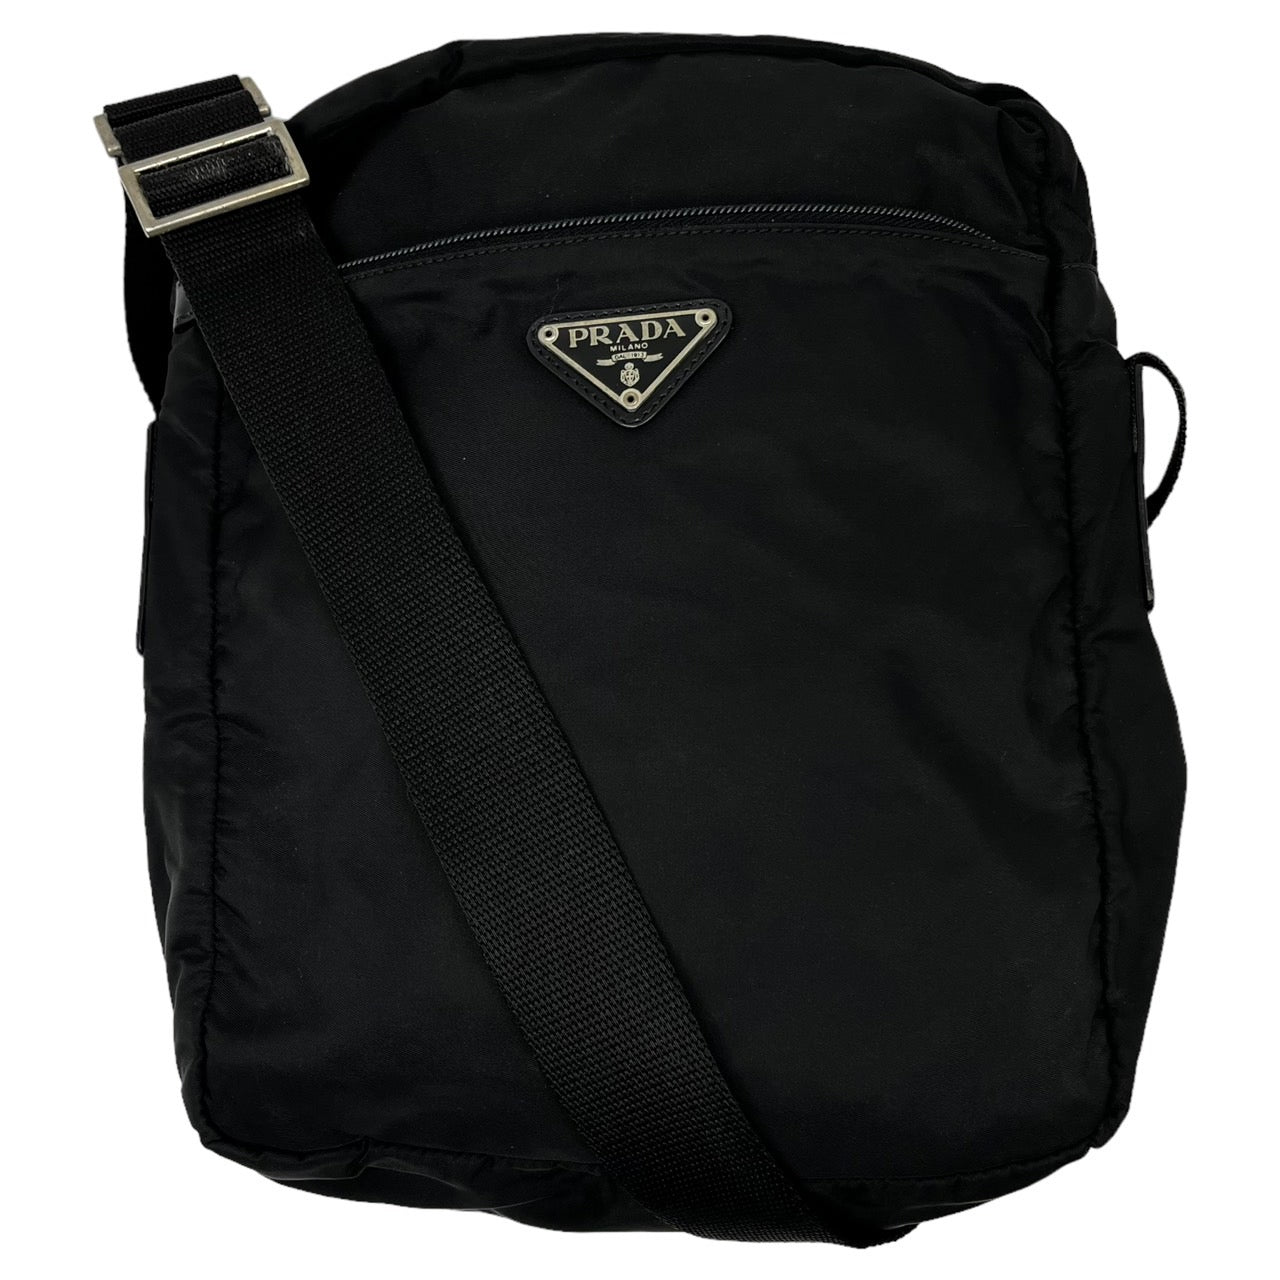 PRADA(プラダ) 98's box type nylon shoulder bag/ボックスタイプ